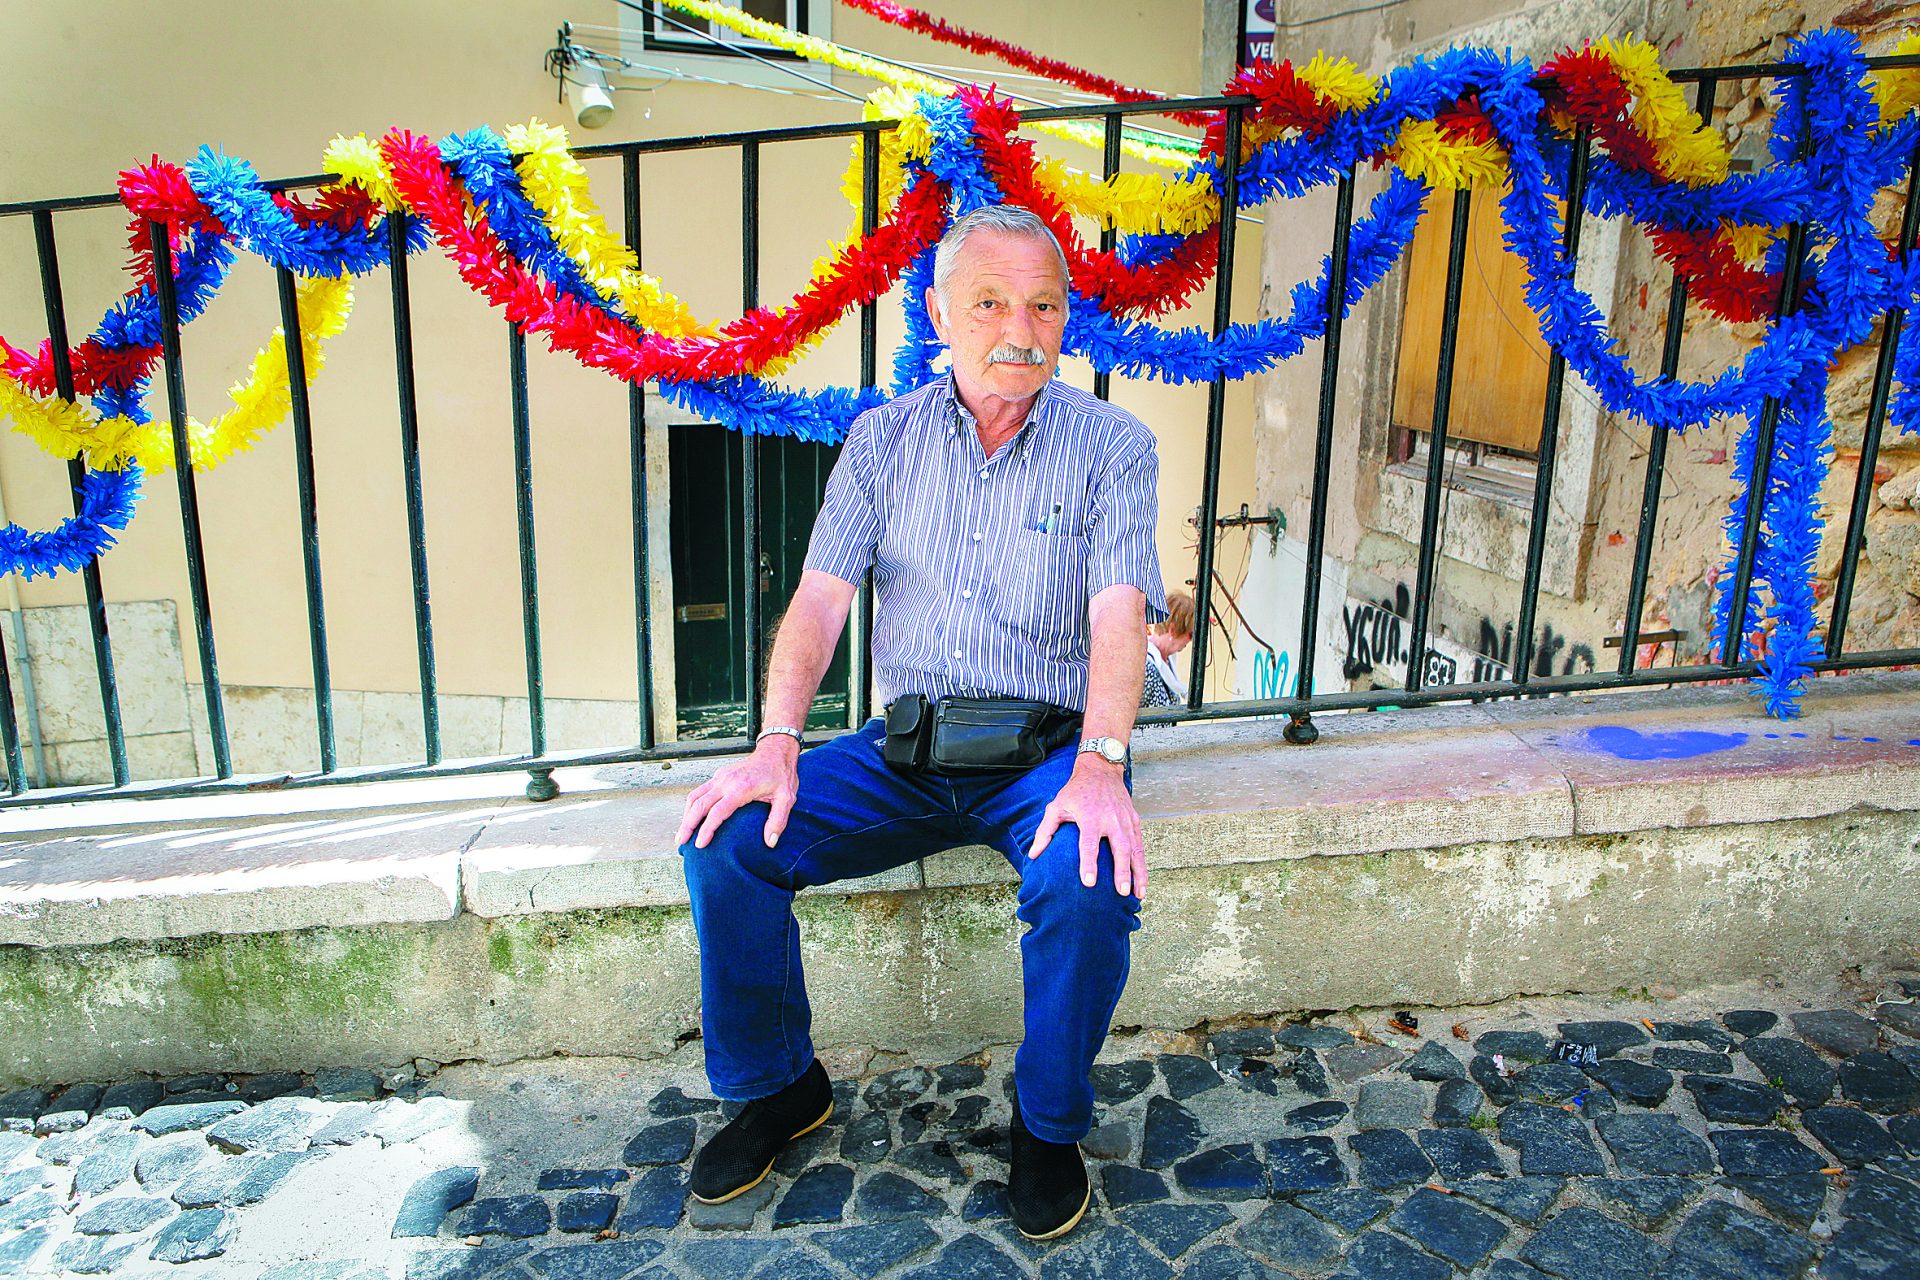 A velhice em Lisboa. “Somos felizes, relativamente. Tudo é relativo na vida”